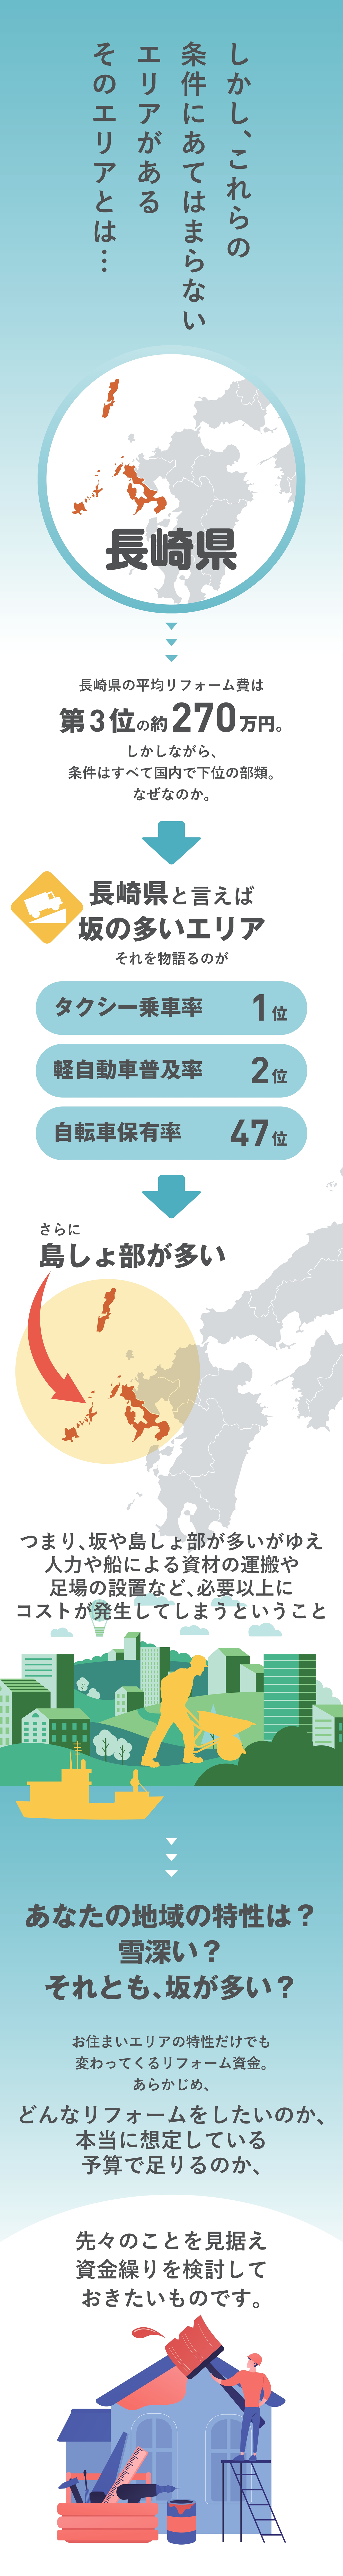 エリア特性の条件にあてはまらない長崎県のリフォーム事情とは - ロンたす